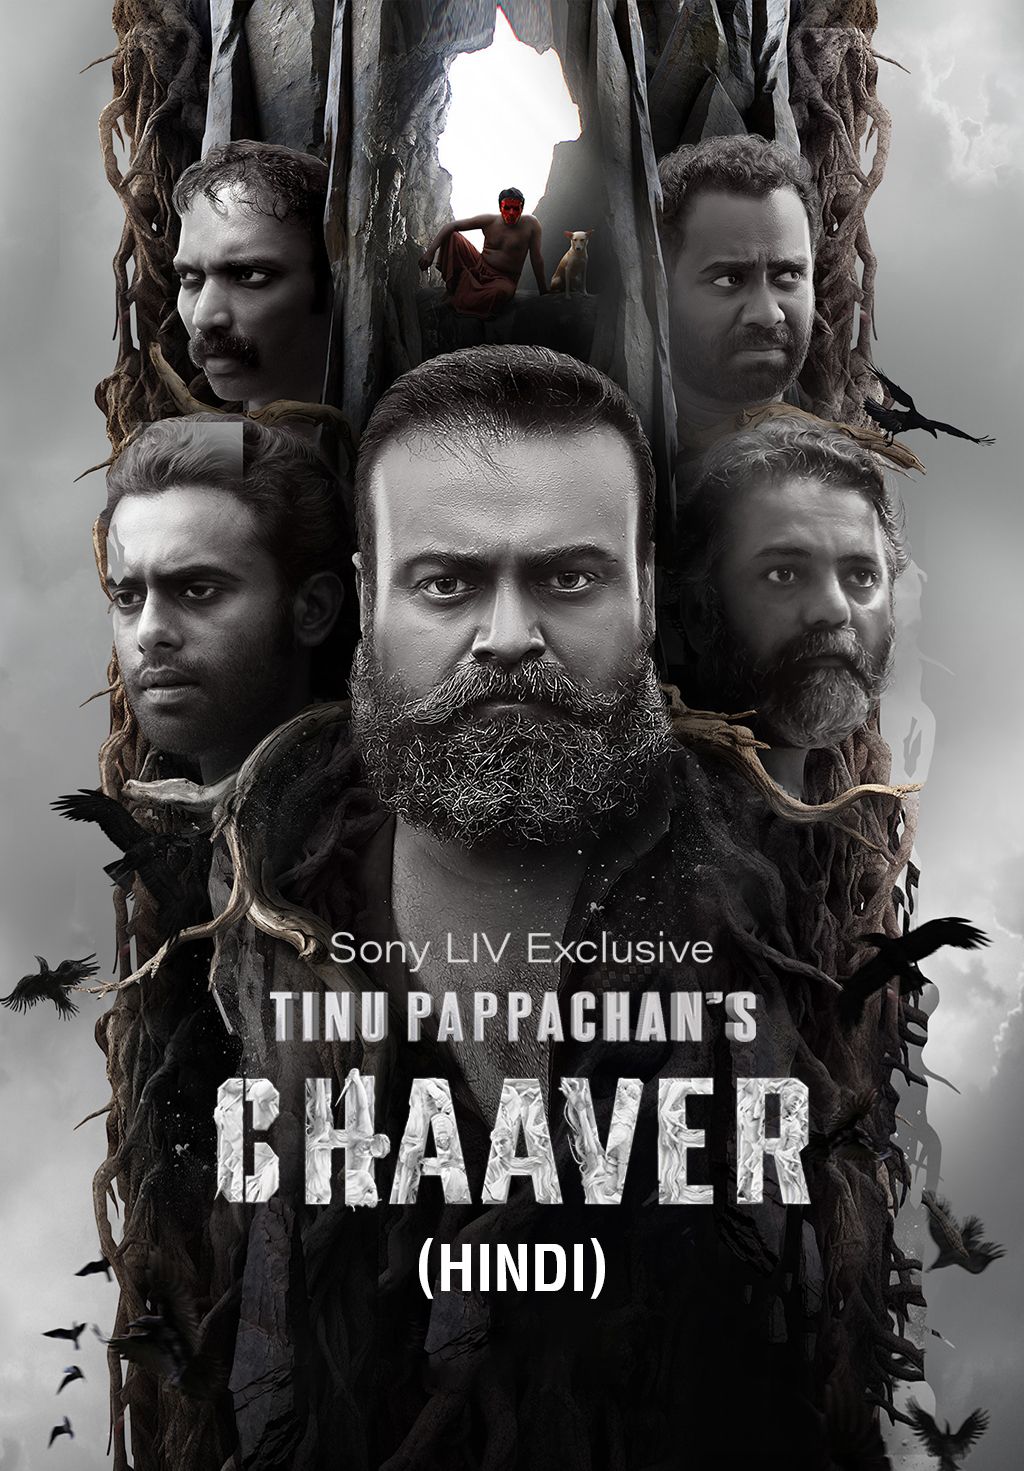 Chaaver (Hindi)